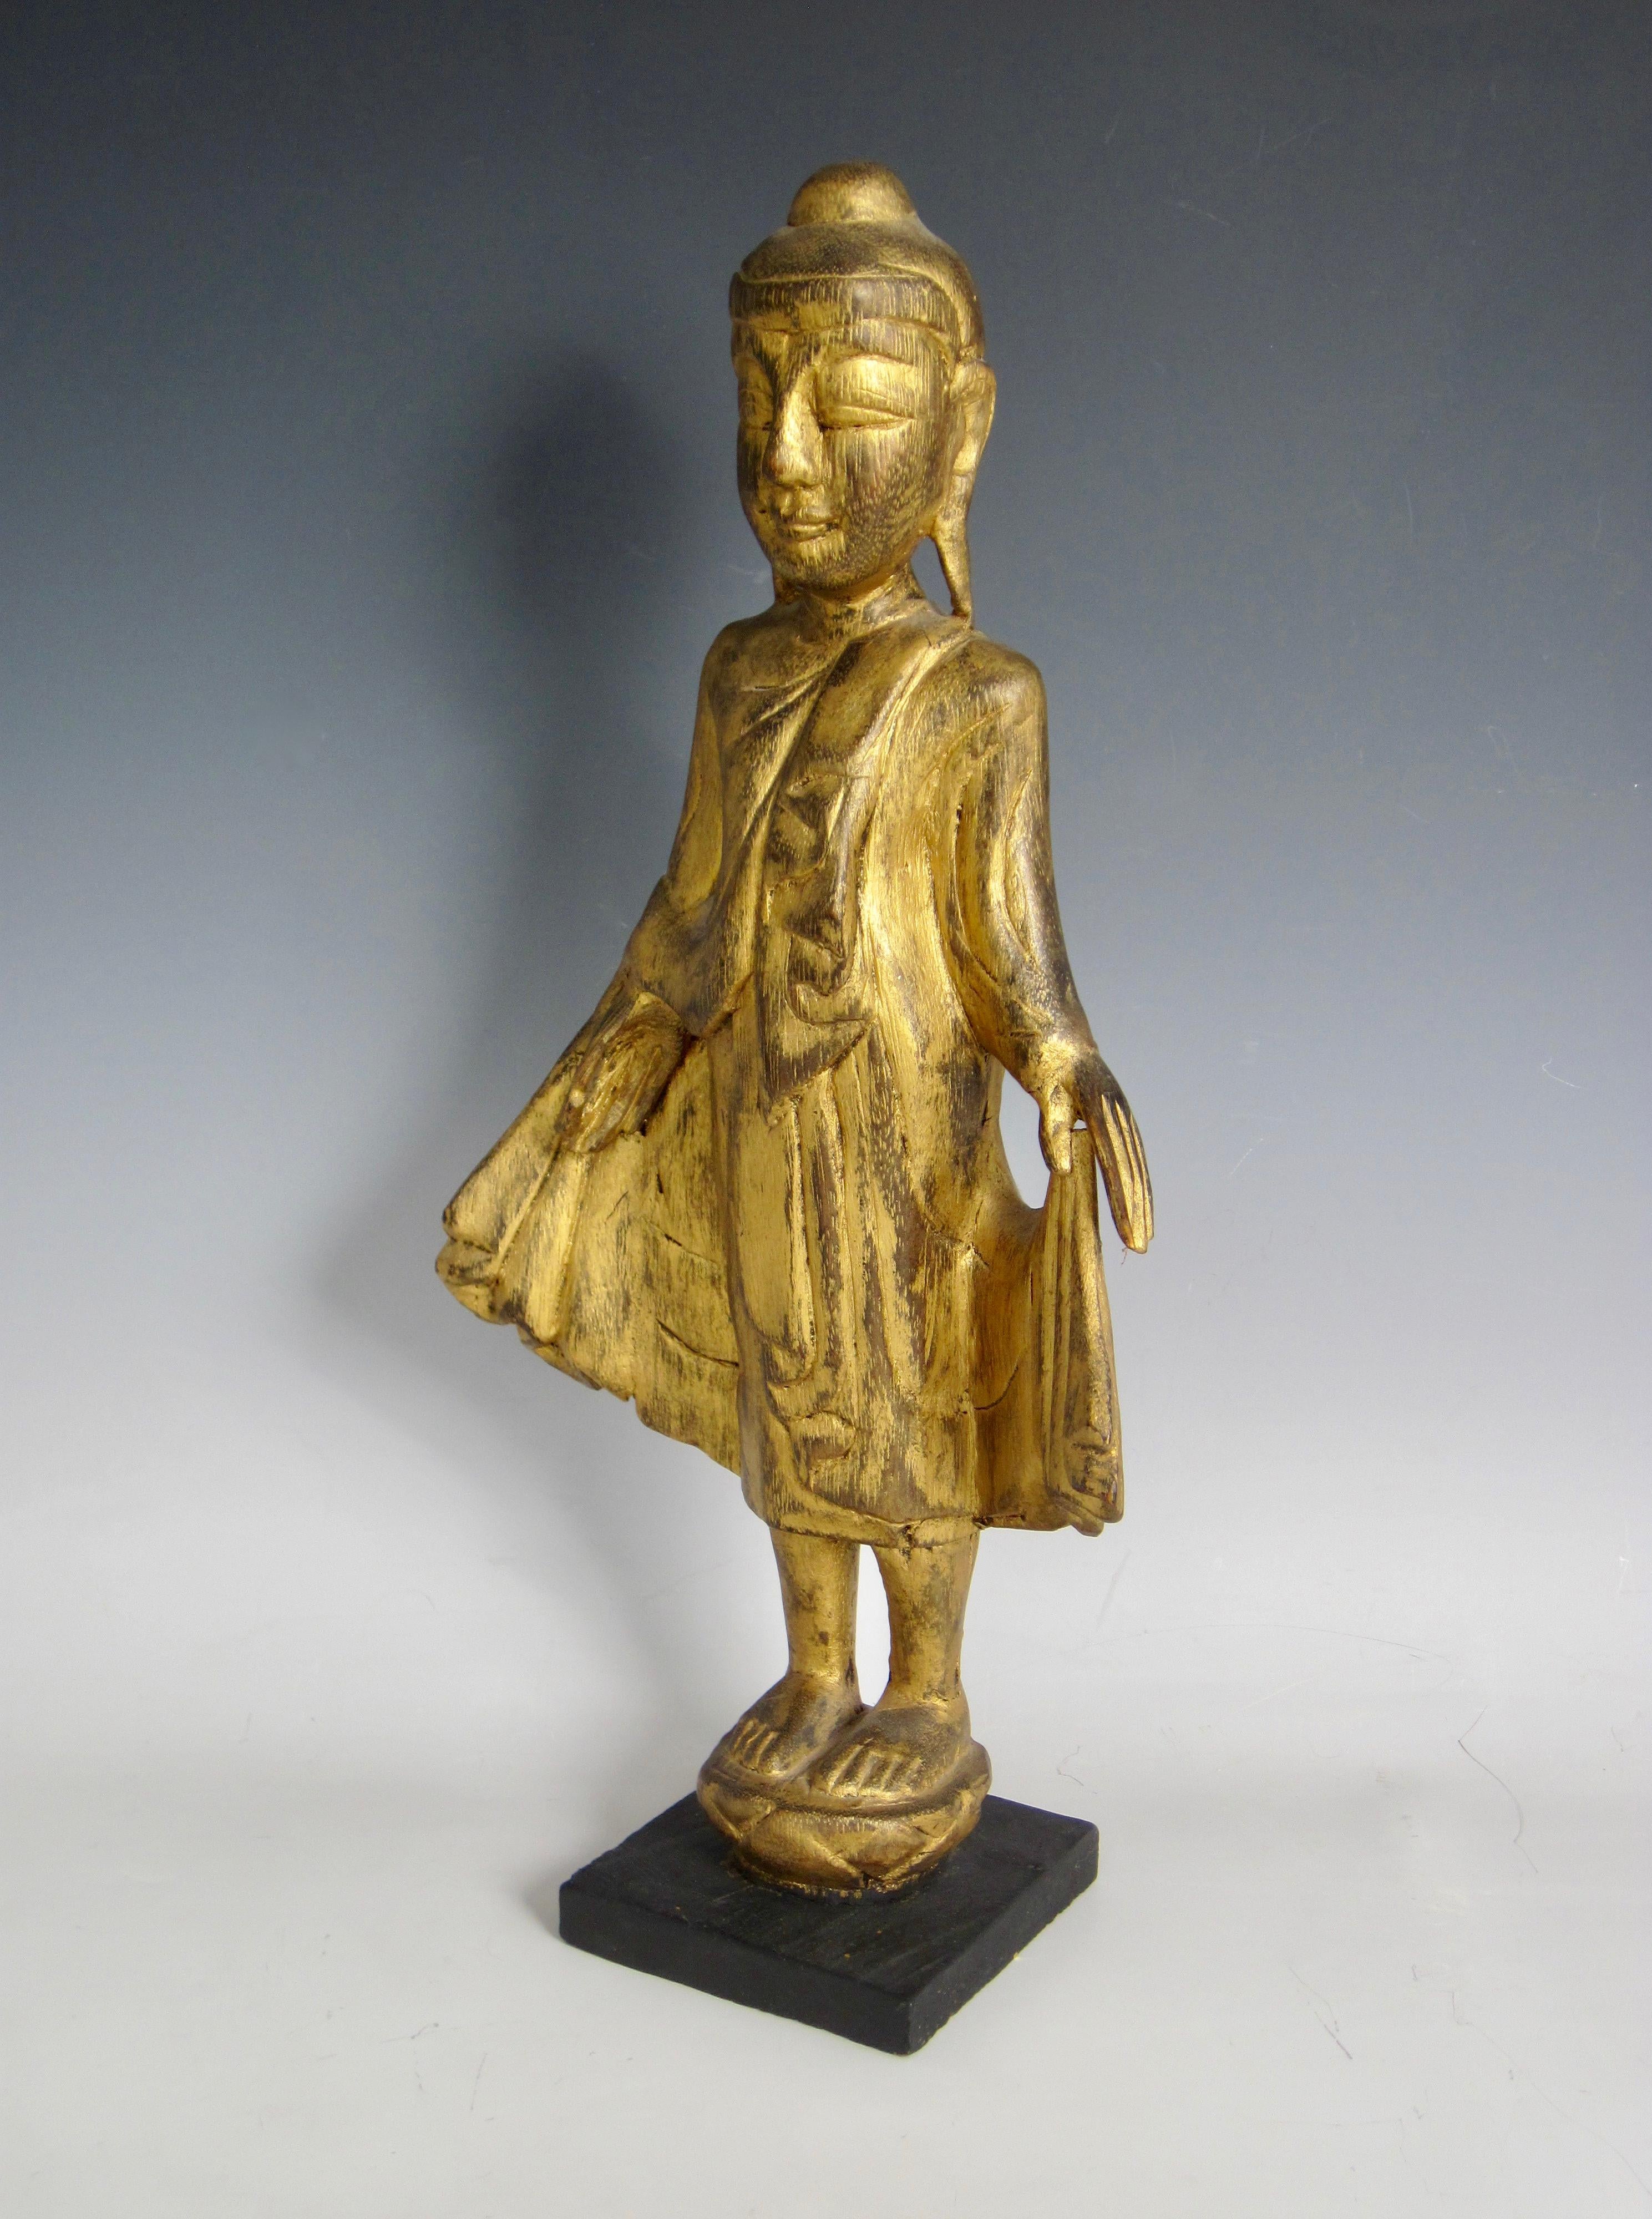 Bouddha debout sur une fleur de lotus, sculpté à la main en bois doré thaïlandais, avec une base carrée noire. Le costume est superposé et fluide et l'expression du visage est paisible avec un sourire. Sérénité et ouverture à la vie, c'est le